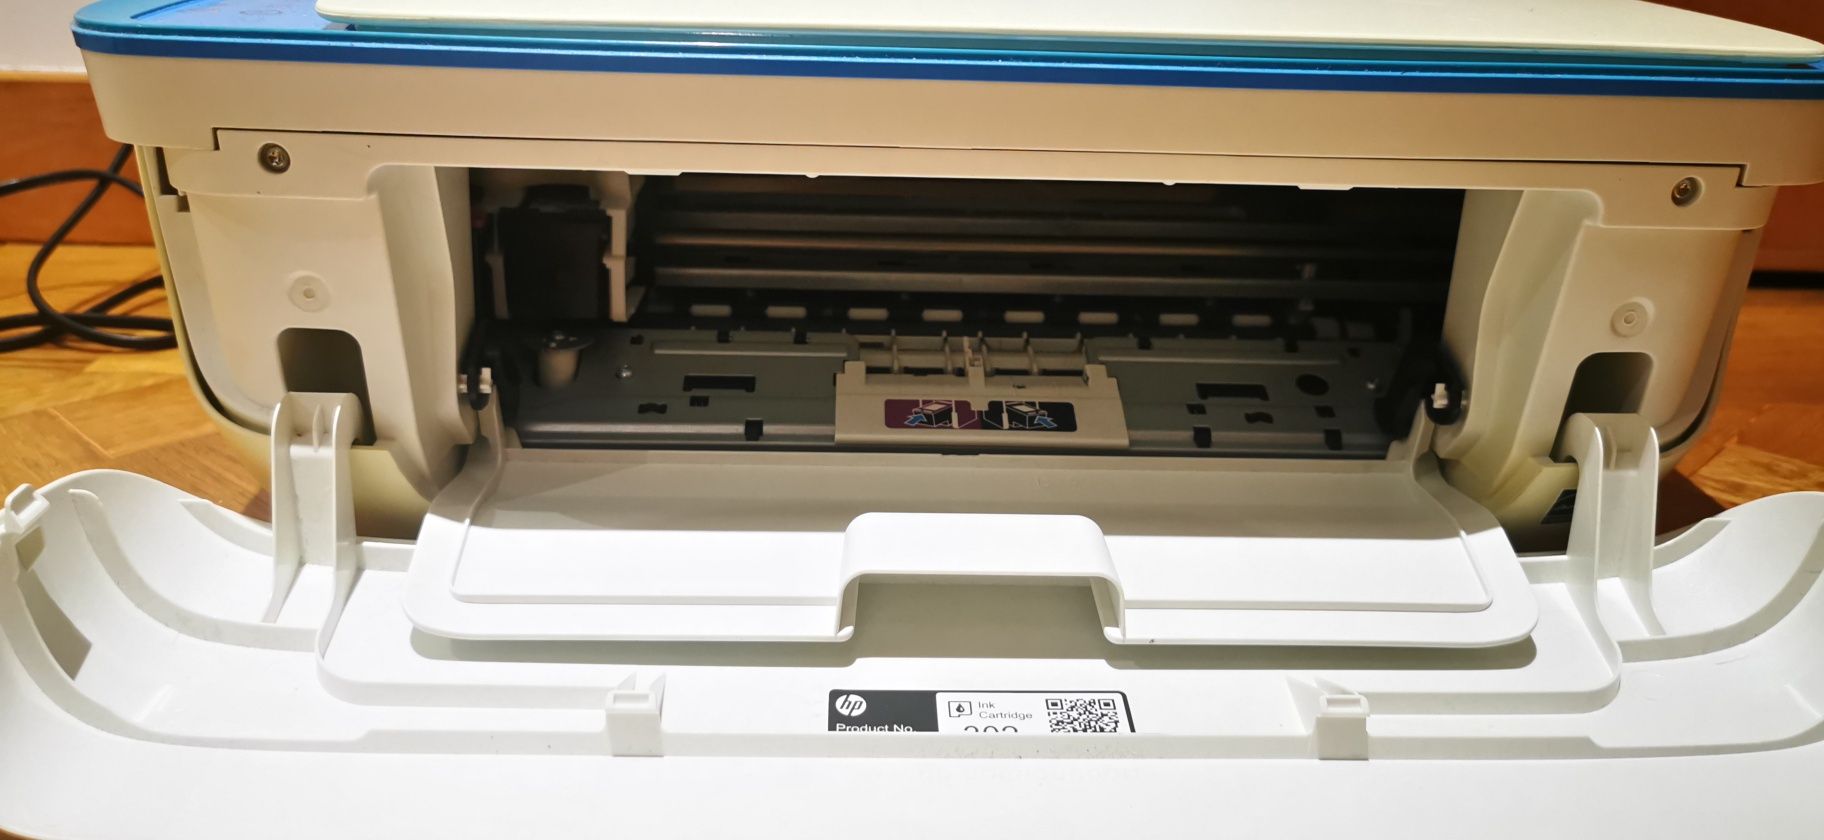 Impressora Hp Deskjet 3639